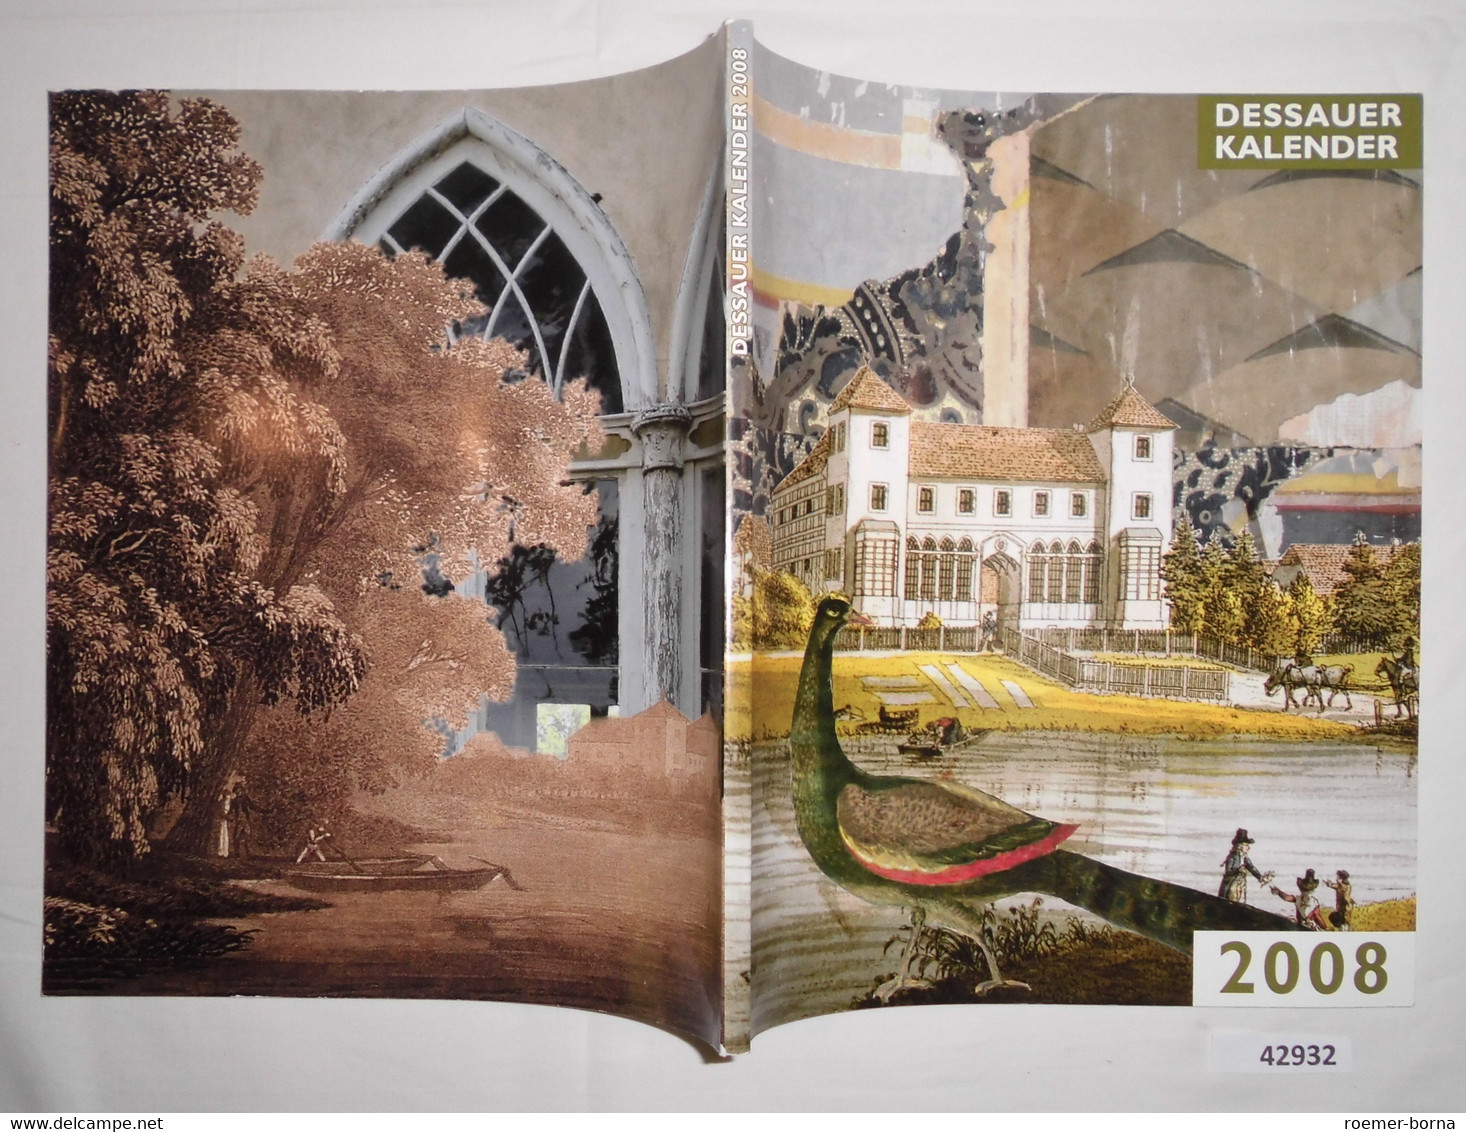 Dessauer Kalender 2008 (52. Jahrgang) - Calendars